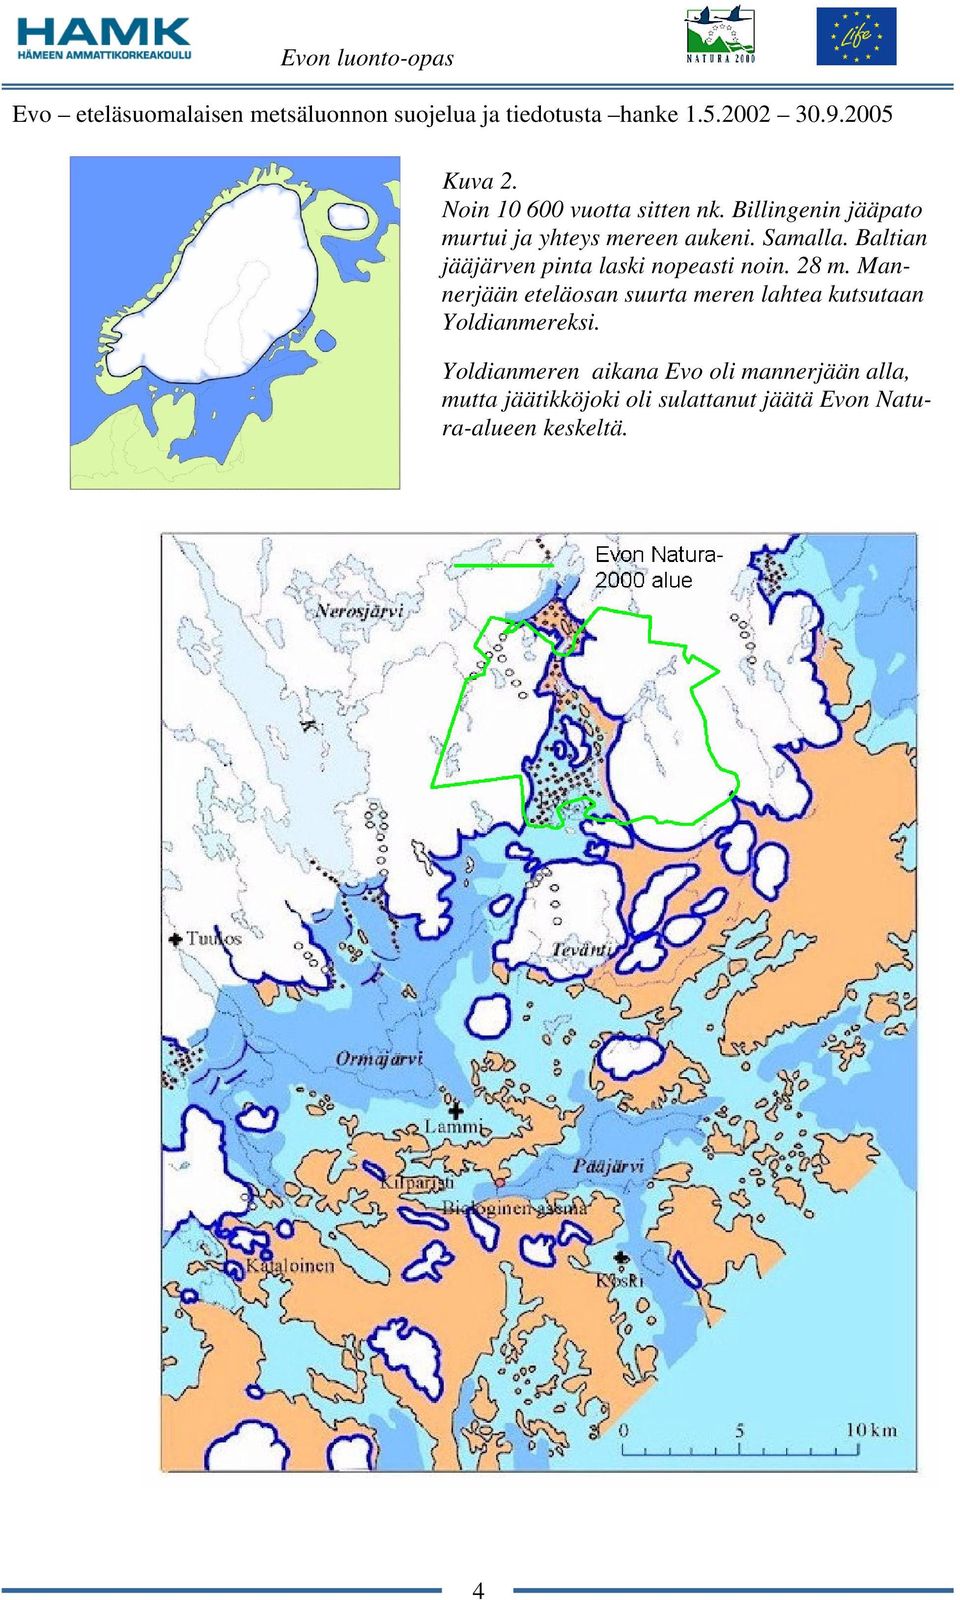 Baltian jääjärven pinta laski nopeasti noin. 28 m.